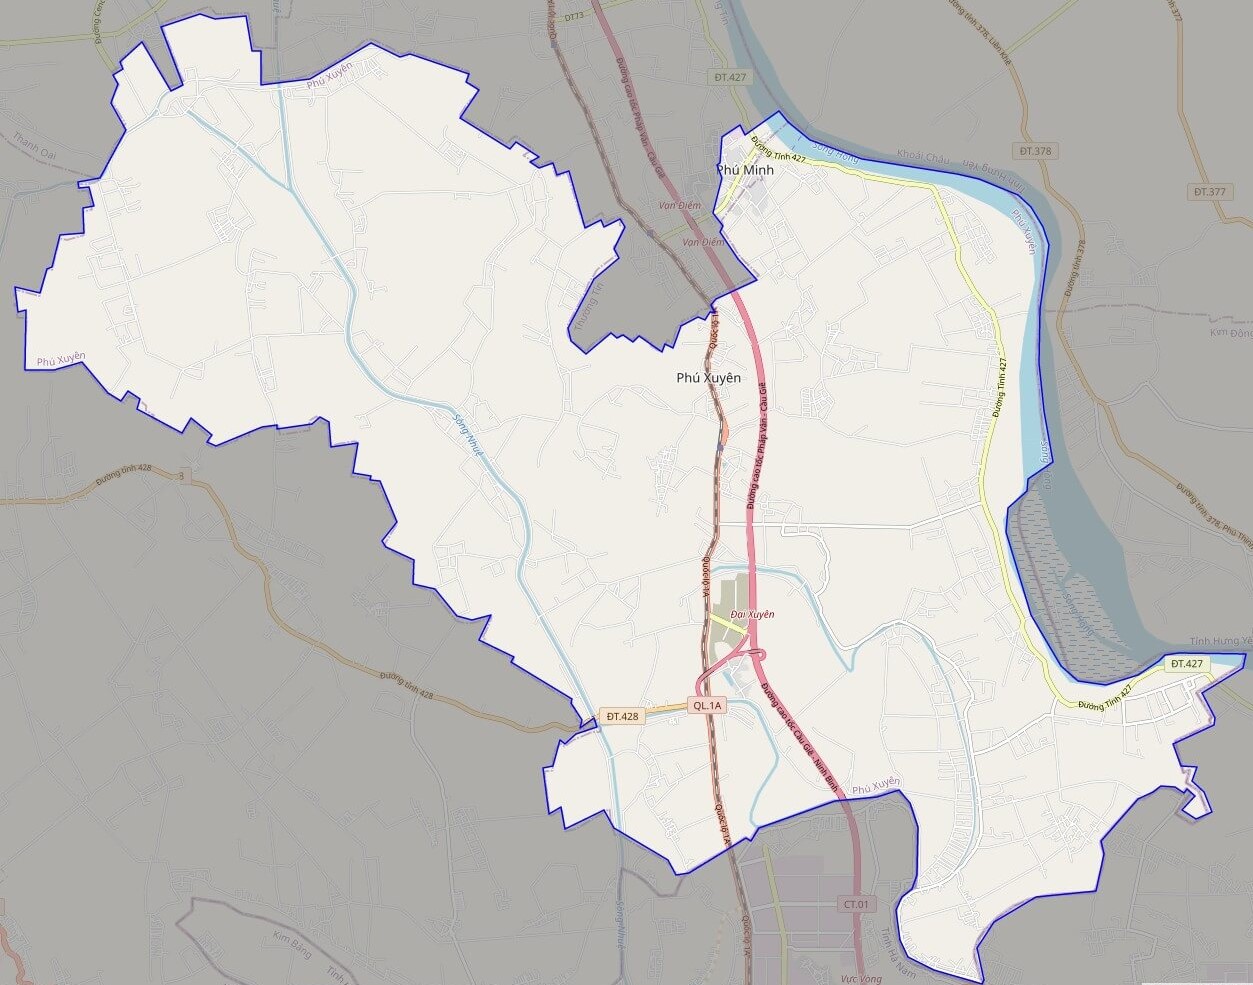 bản đồ giao thông huyện Phú Xuyên